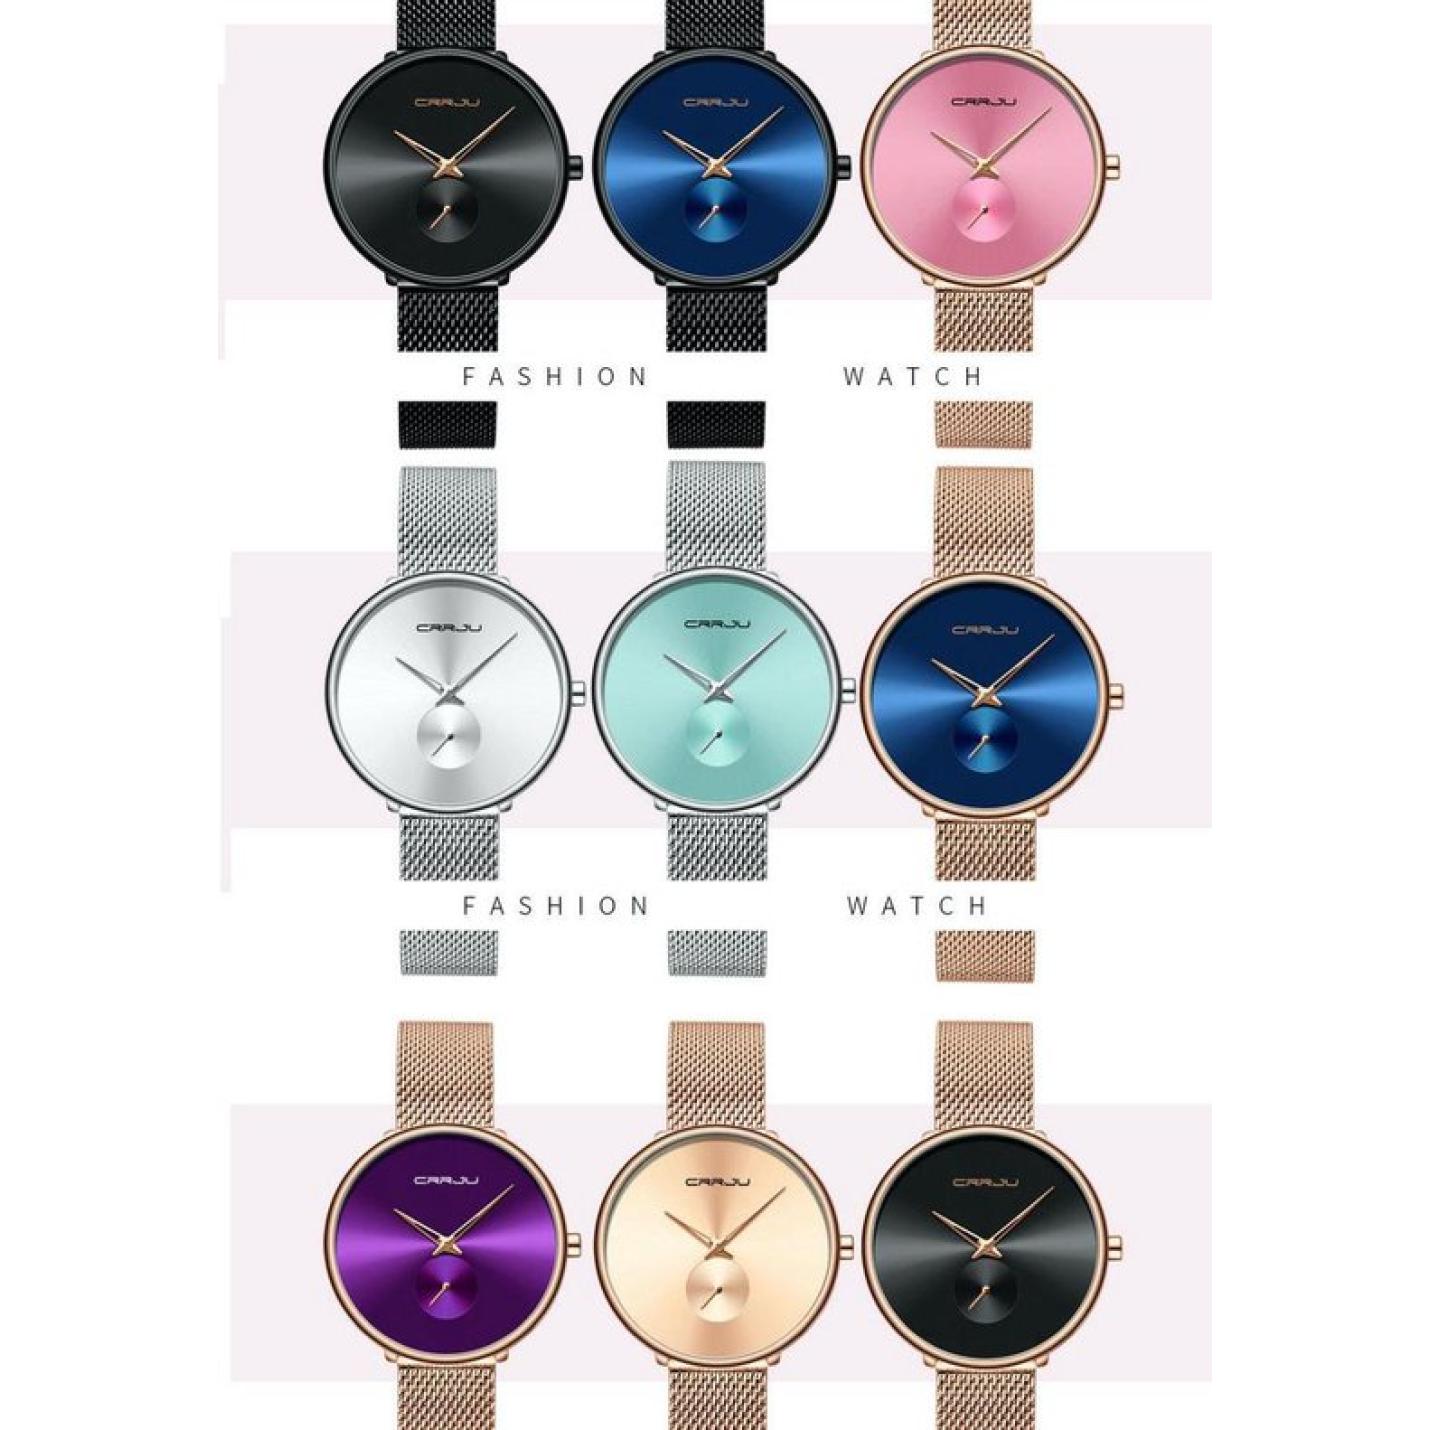 crrju-horloge-dameshorloge-zwart-blauw-staal-varianten